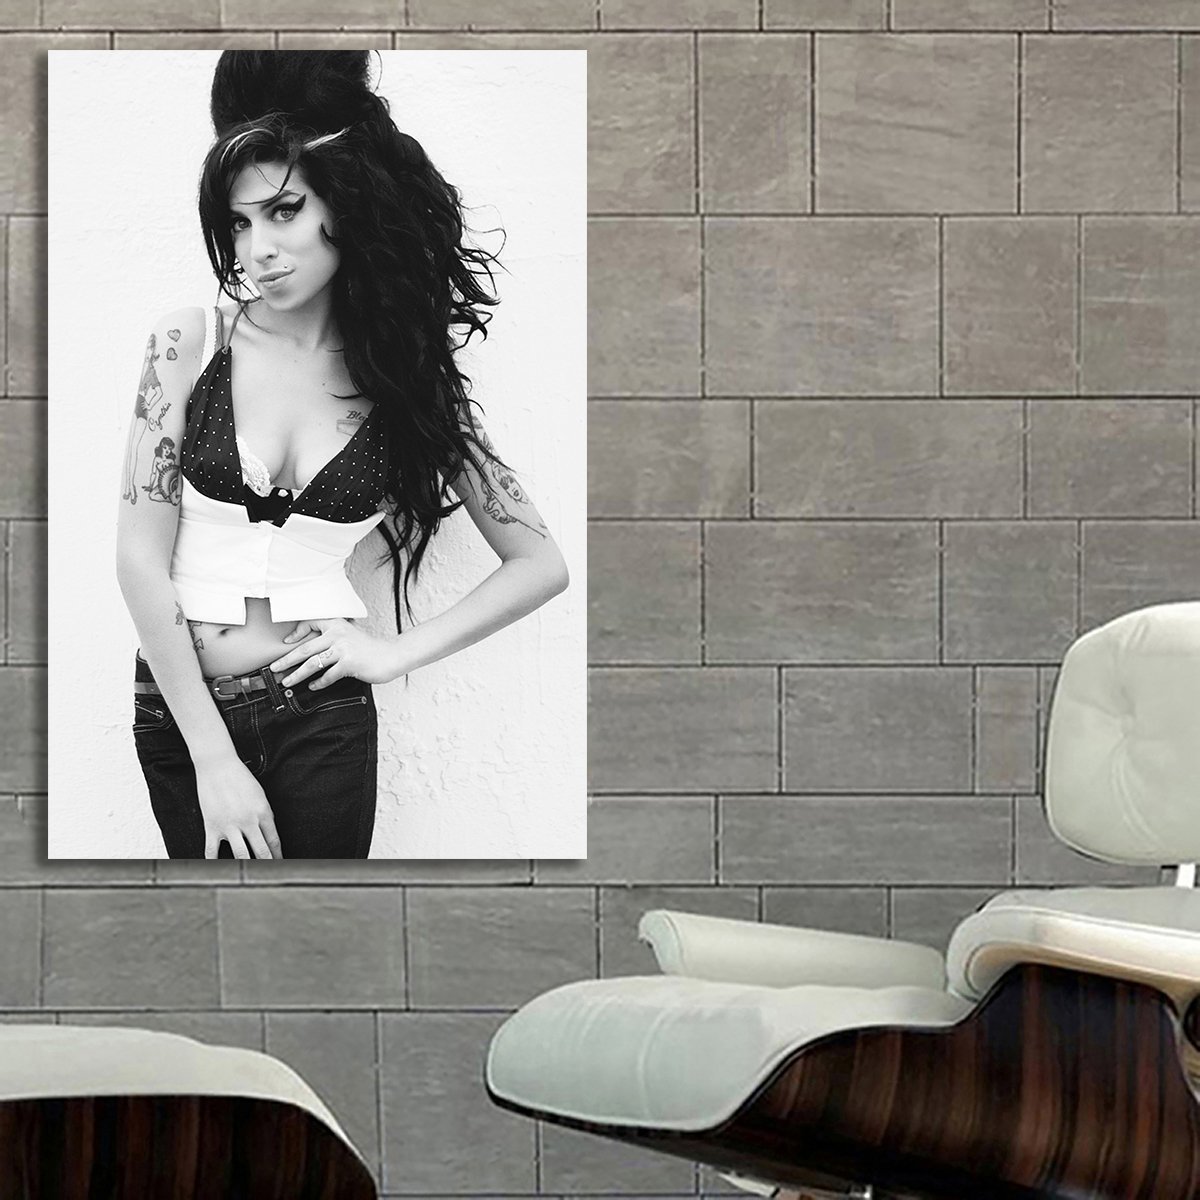 【メール便不可】 大 絵 雑貨 写真 グッズ インテリア アート 海外 150x100cm ポスター 特大 Winehouse Amy エイミー・ワインハウス おしゃれ 12 カフェ その他